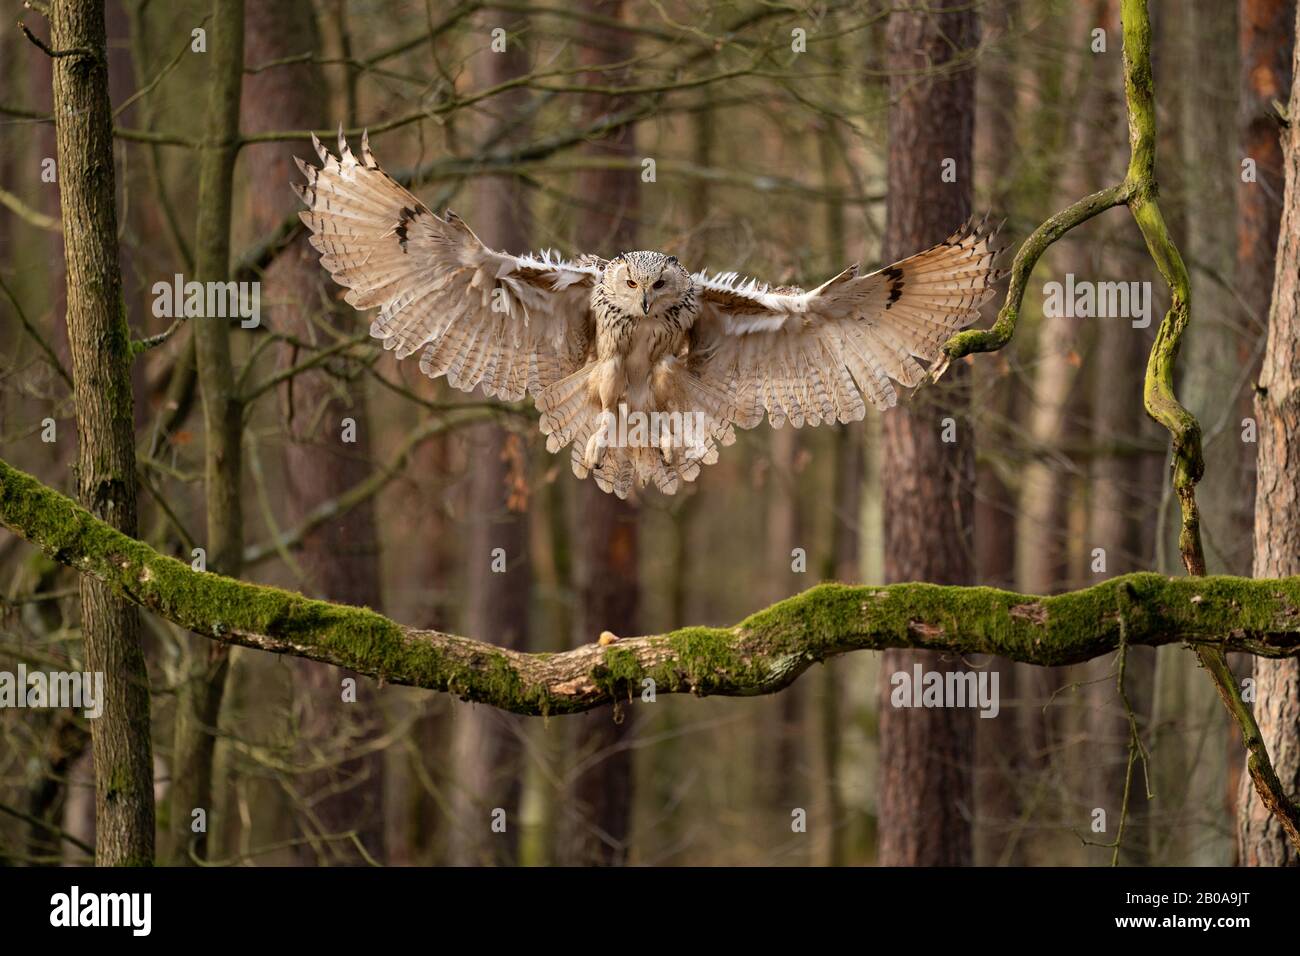 Grande OWL atterraggio al ramo di albero. Gufo di aquila siberiana. Foto Stock